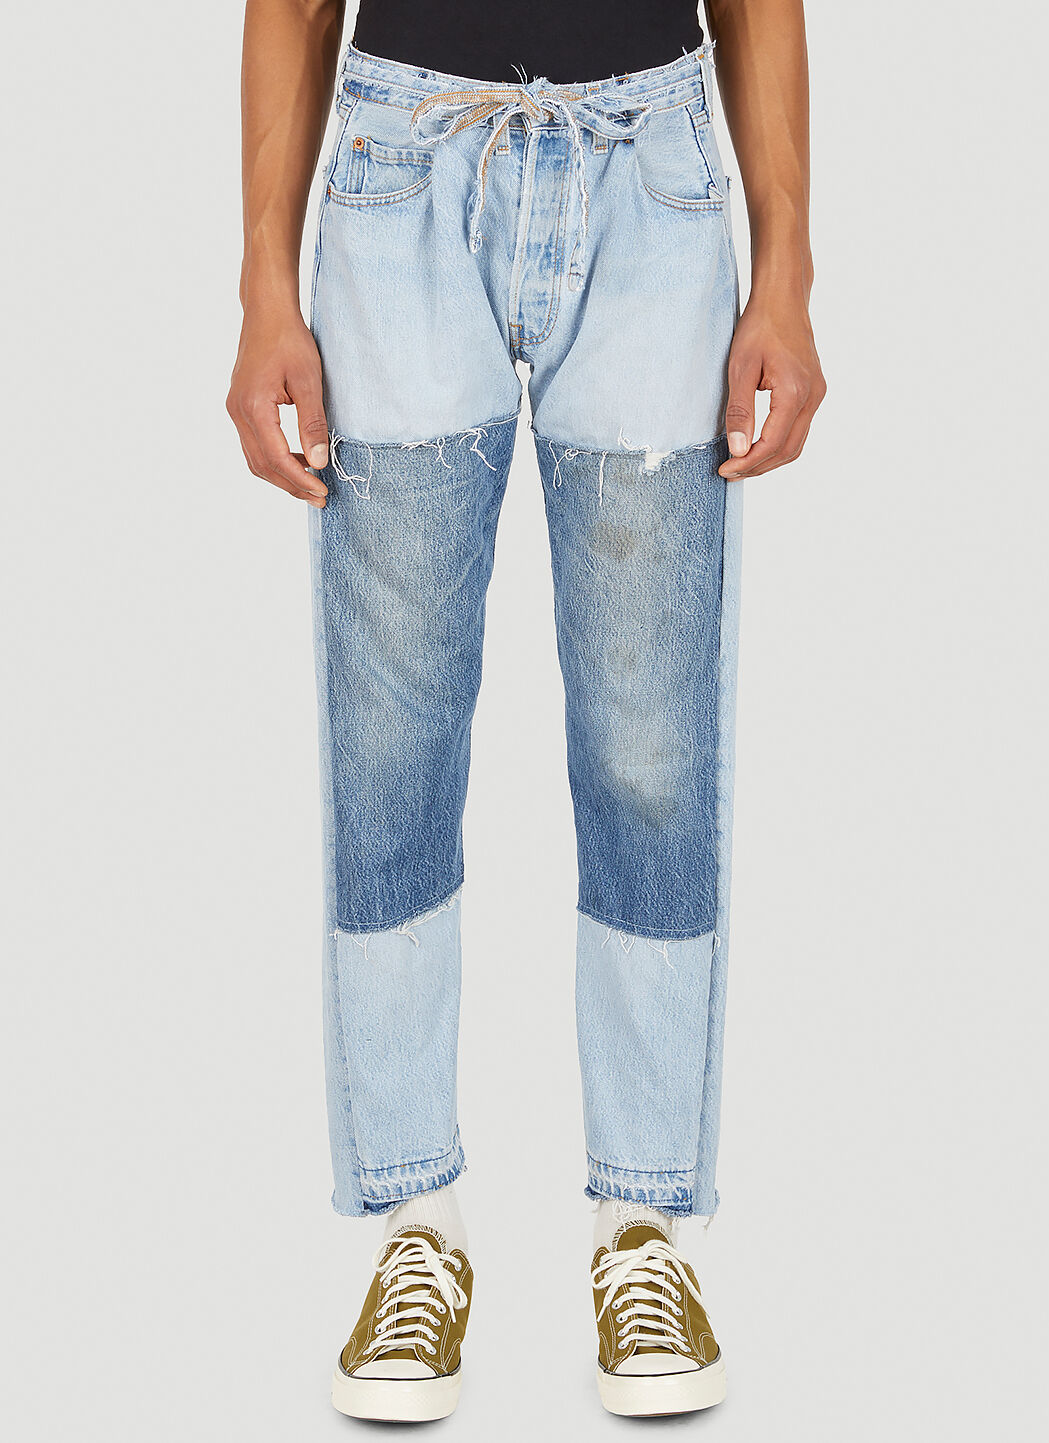 Bonum Asymmetric Cuff Jeans Blue bon0338003